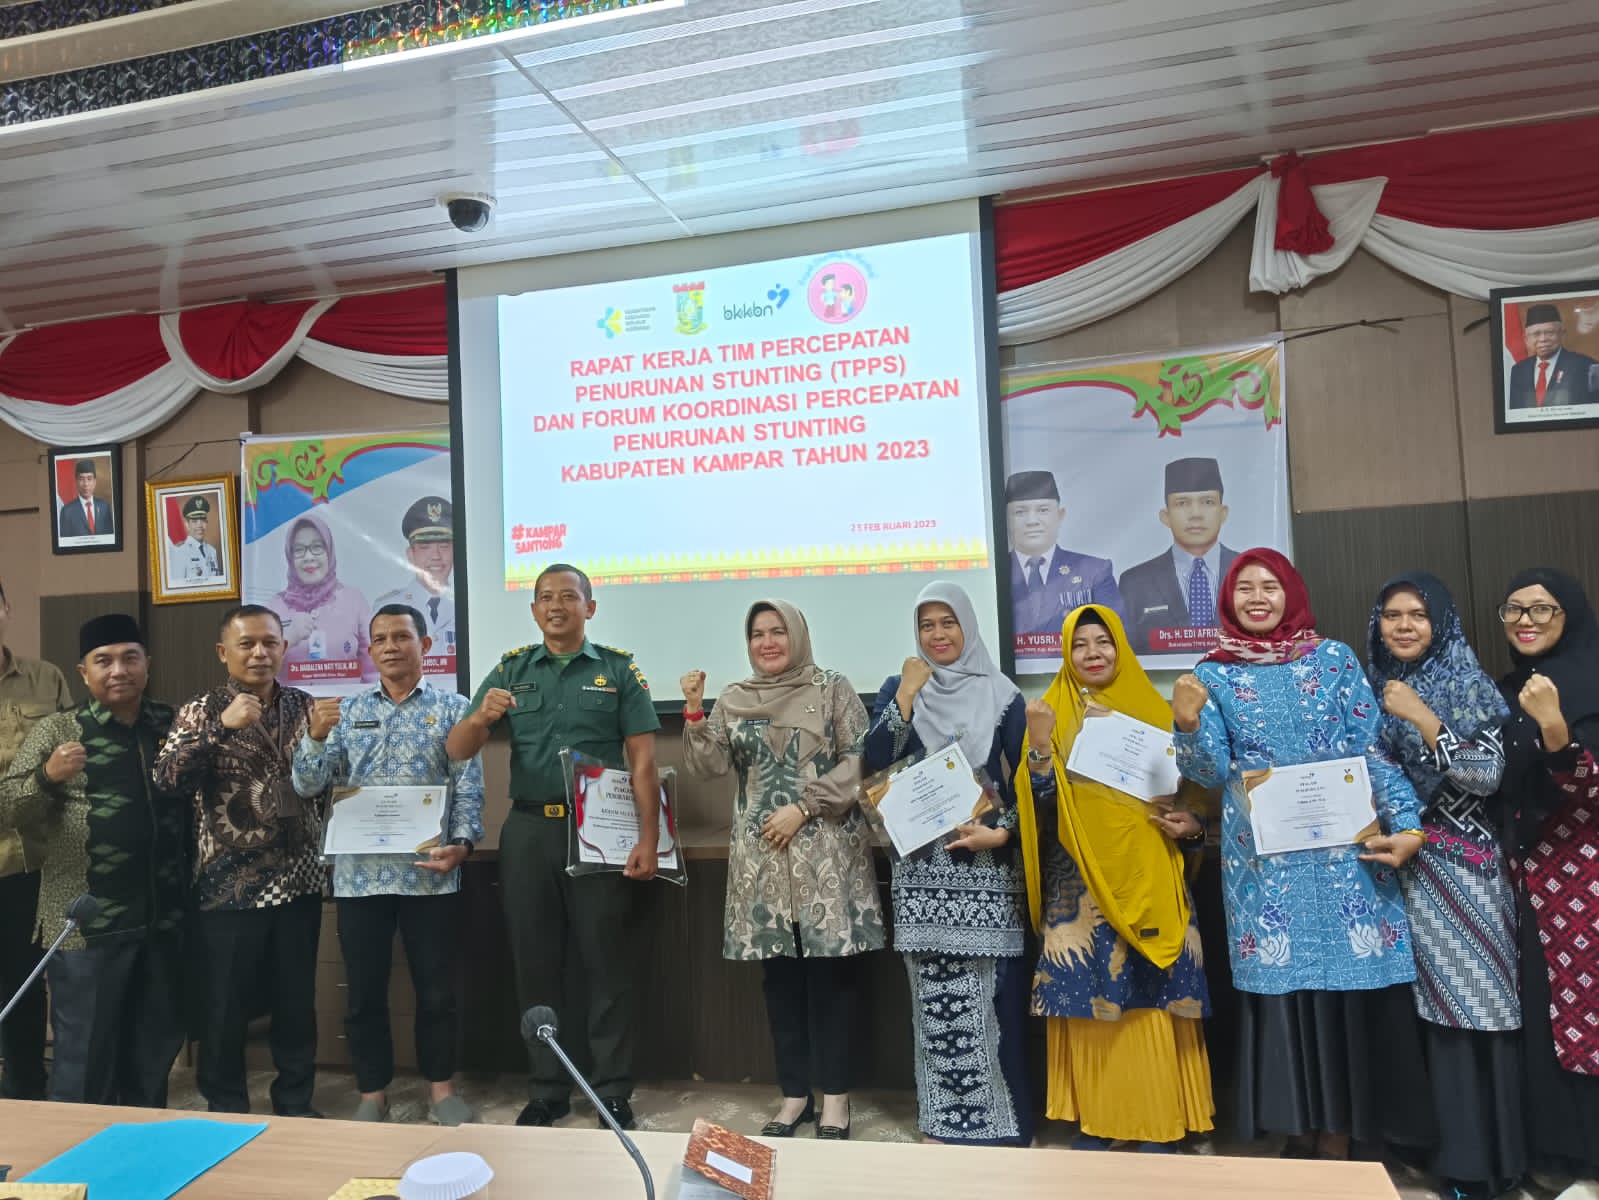 Tim Percepatan Penurunan Stunting Riau Gelar Rapat Kerja Bersama Forum Koordinasi